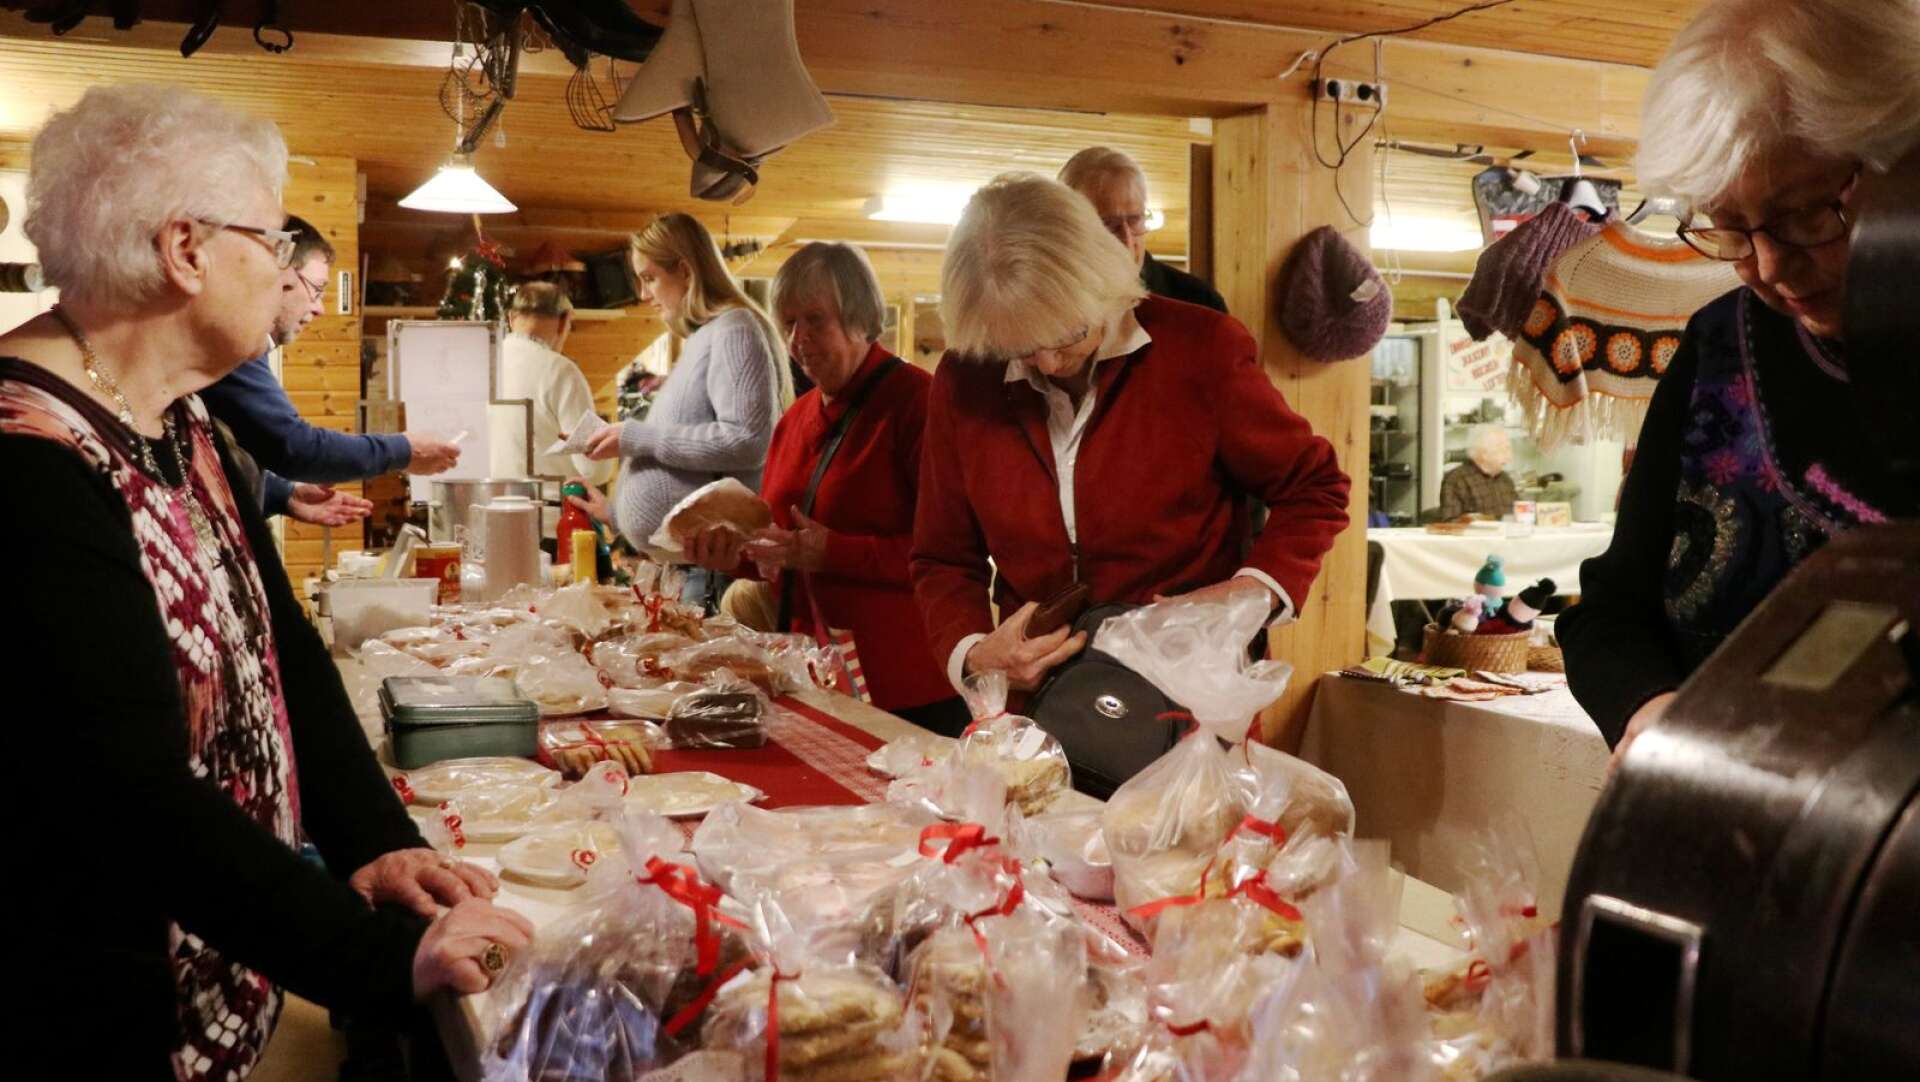 Småkakor, lusskatter, finskor, julpepparkakor och saffransskorpor: utbudet av hembakt är alltid lika stort som uppskattat på hembygdsmuseets julmarknader. Bakom bordet står Håkan Bürgemeister och Stina Nilsson.

   